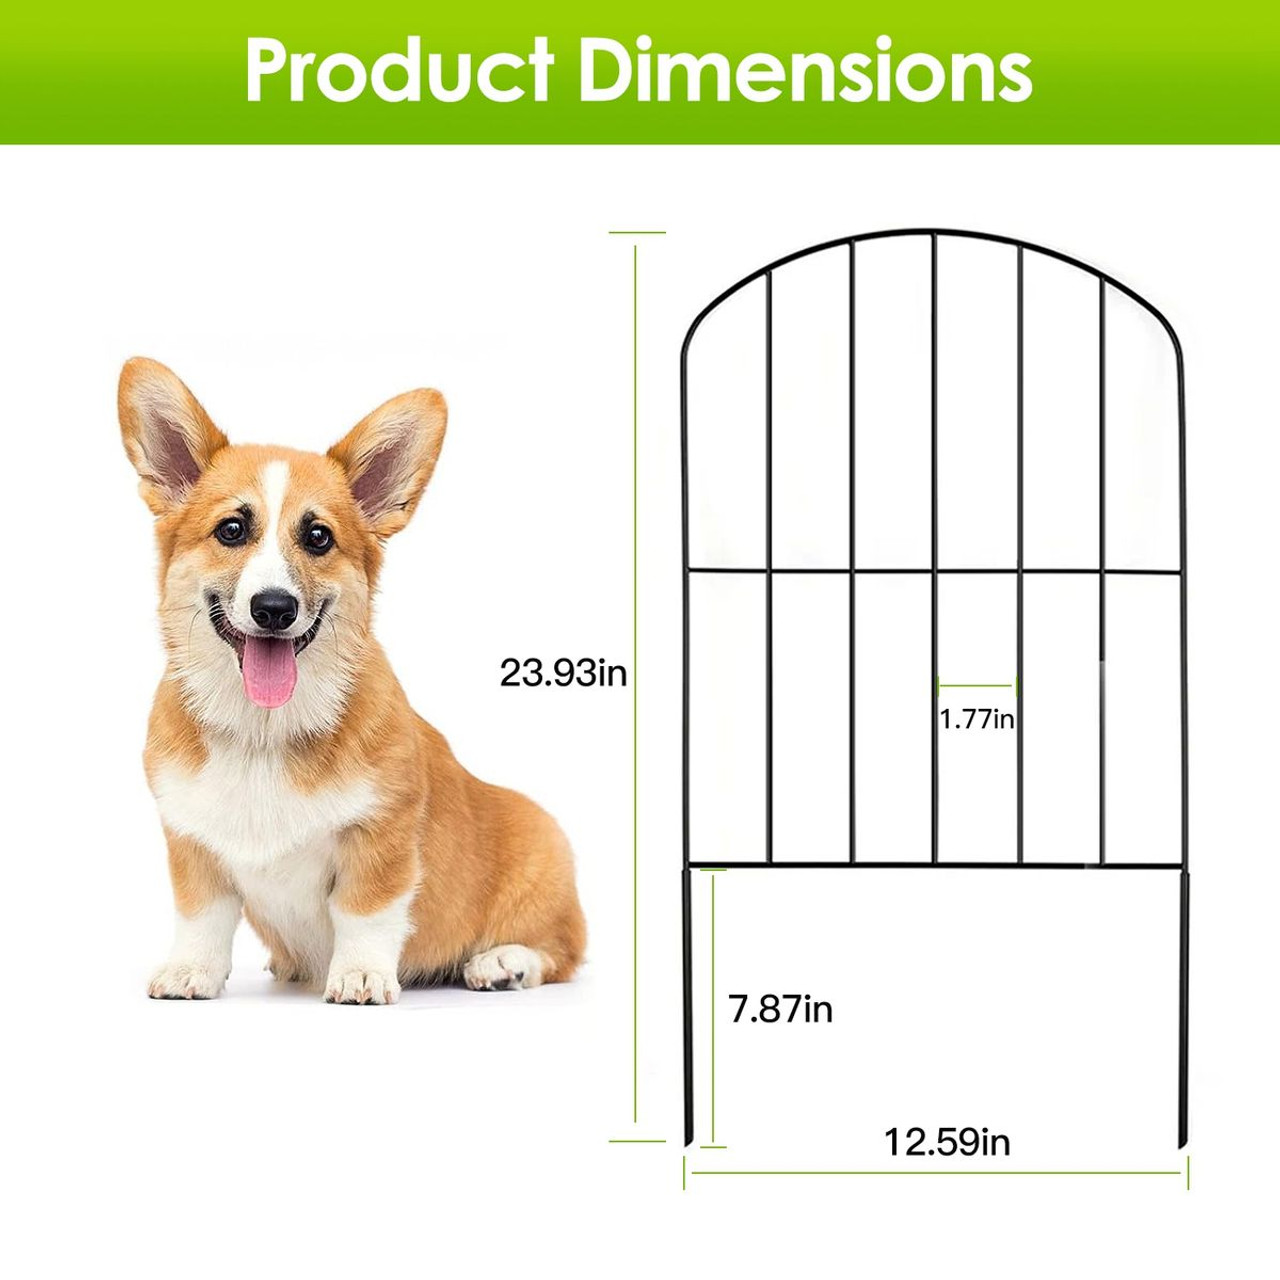 iMounTEK® Decorative Garden Fence Iron Folding Panel Border (Set of 10) product image